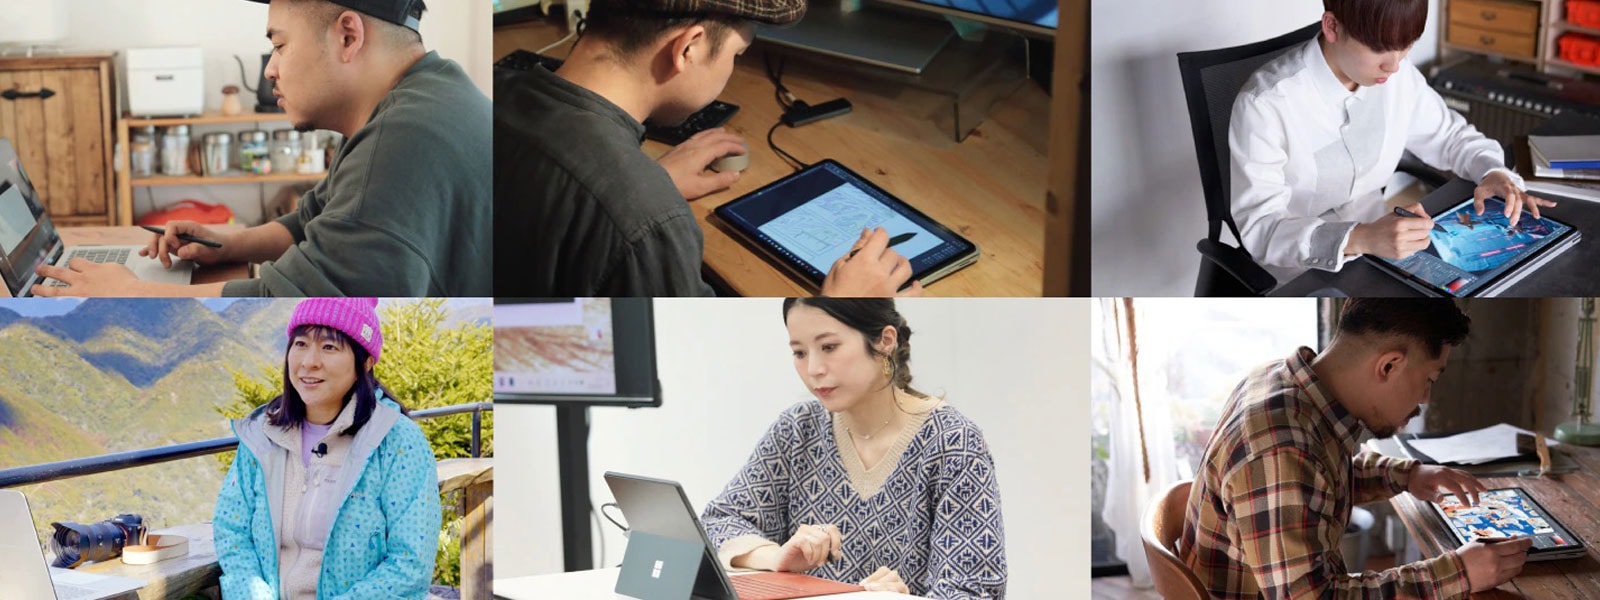 女の人と男の人が Surface デバイスを利用している様子の画像